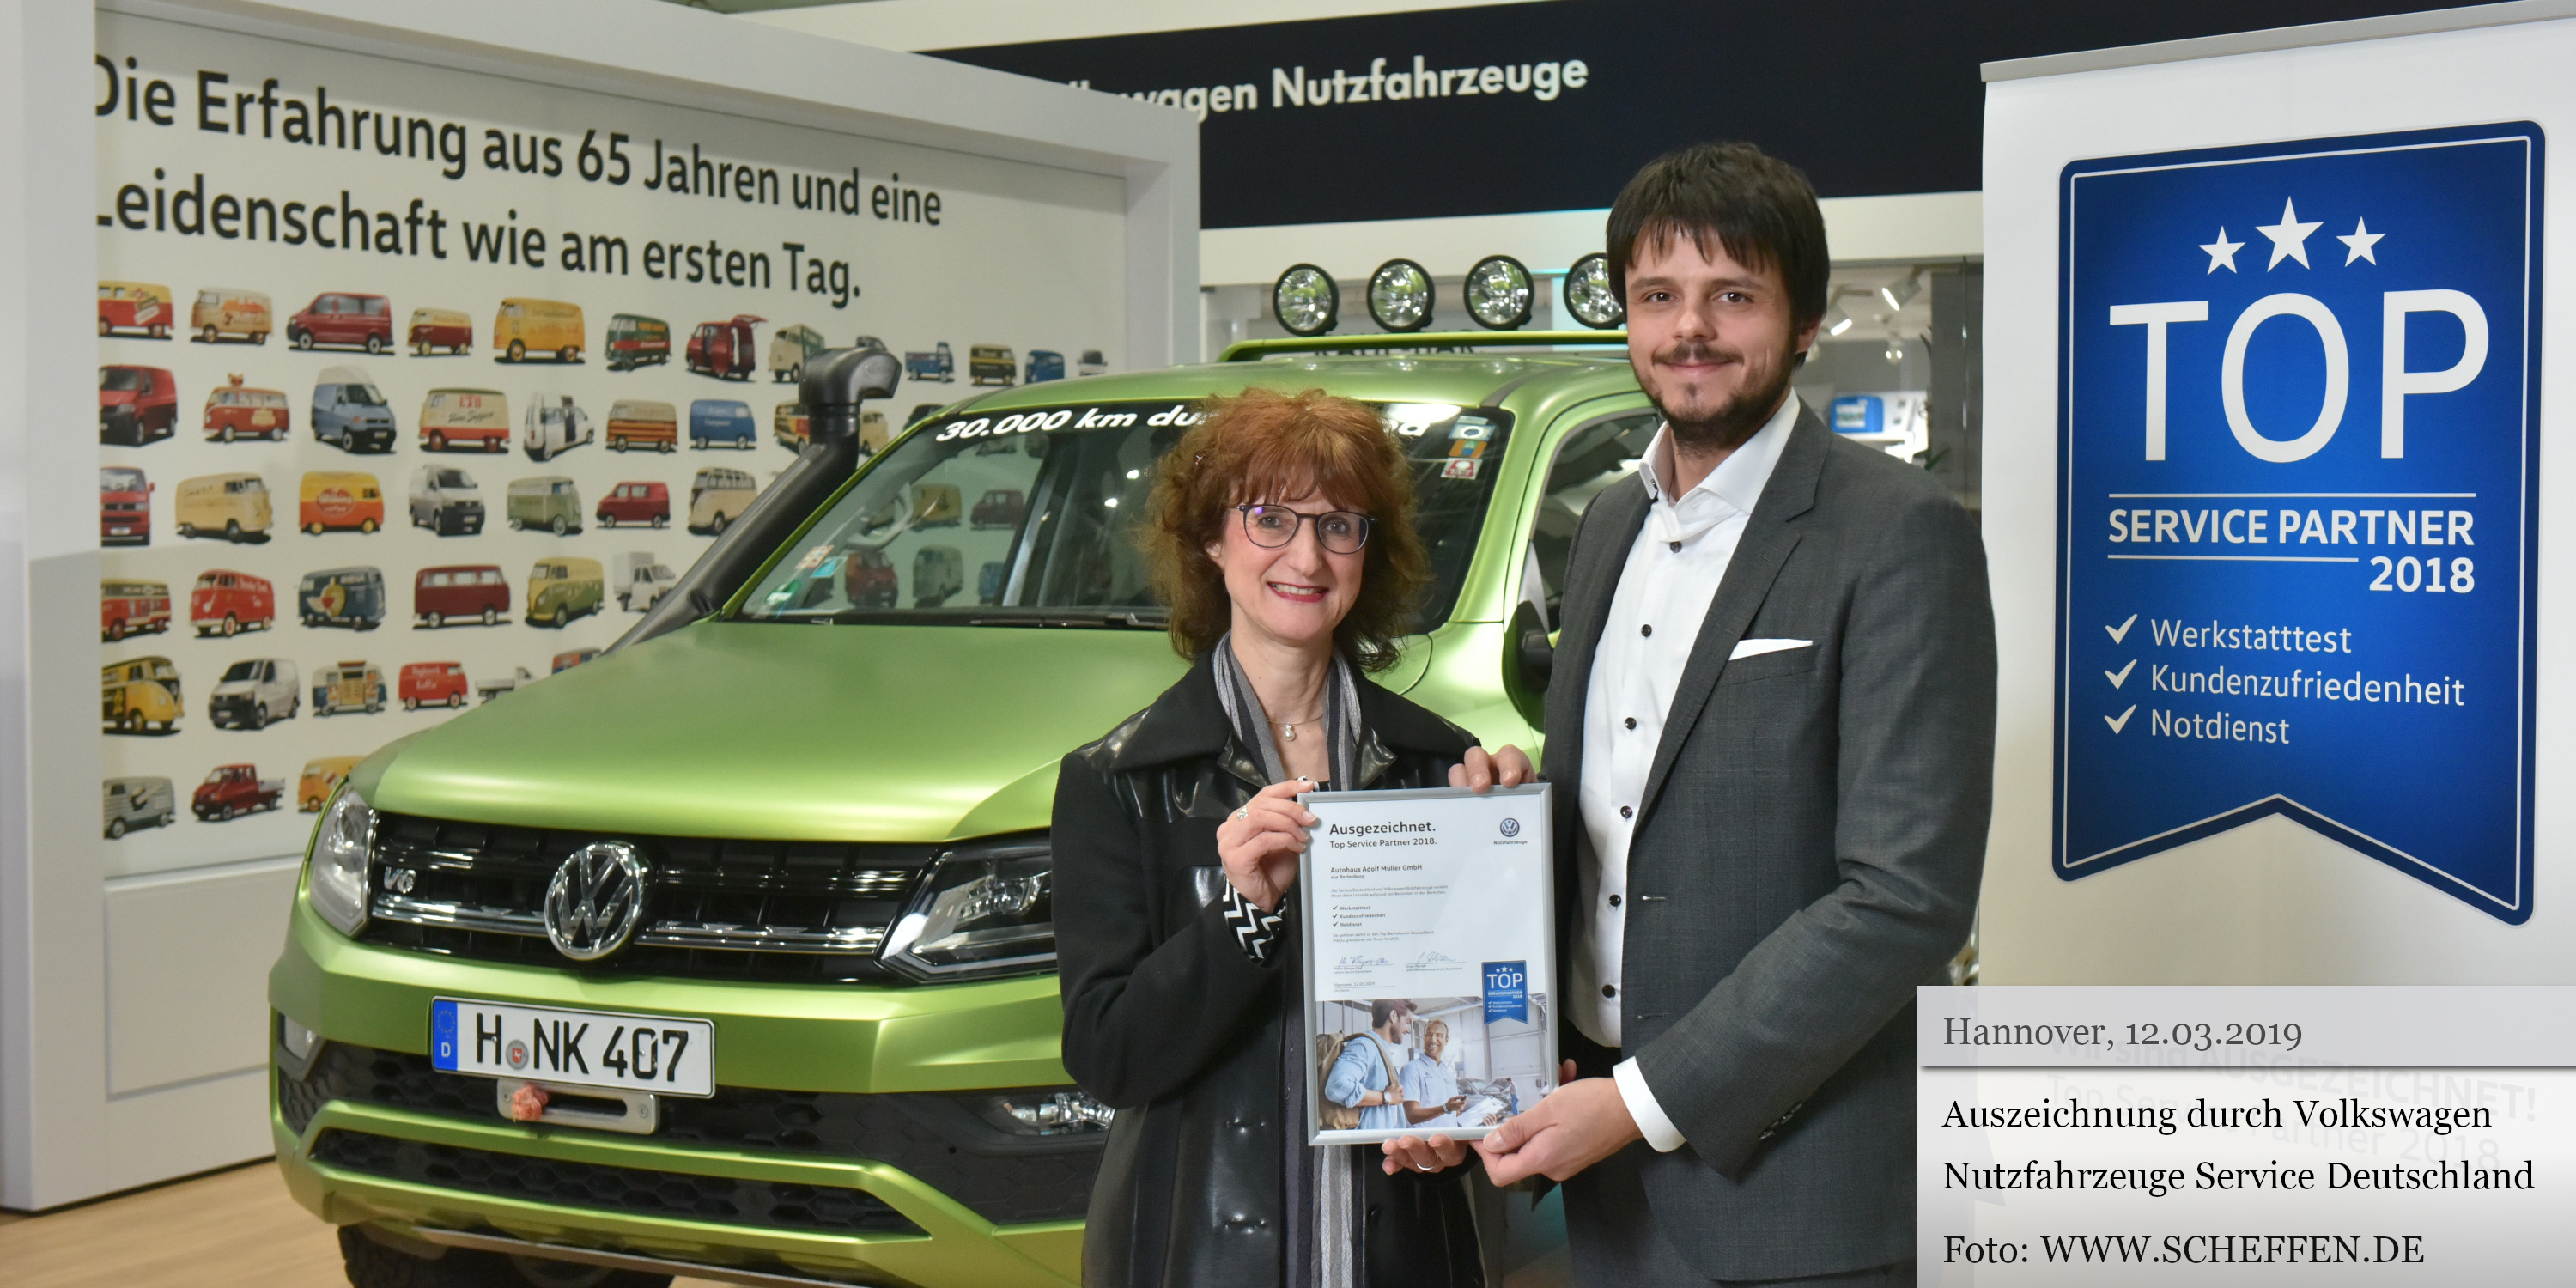 Auszeichnung Volkswagen Nutzfahrzeuge Service Deutschland 2019 Top Service Partner